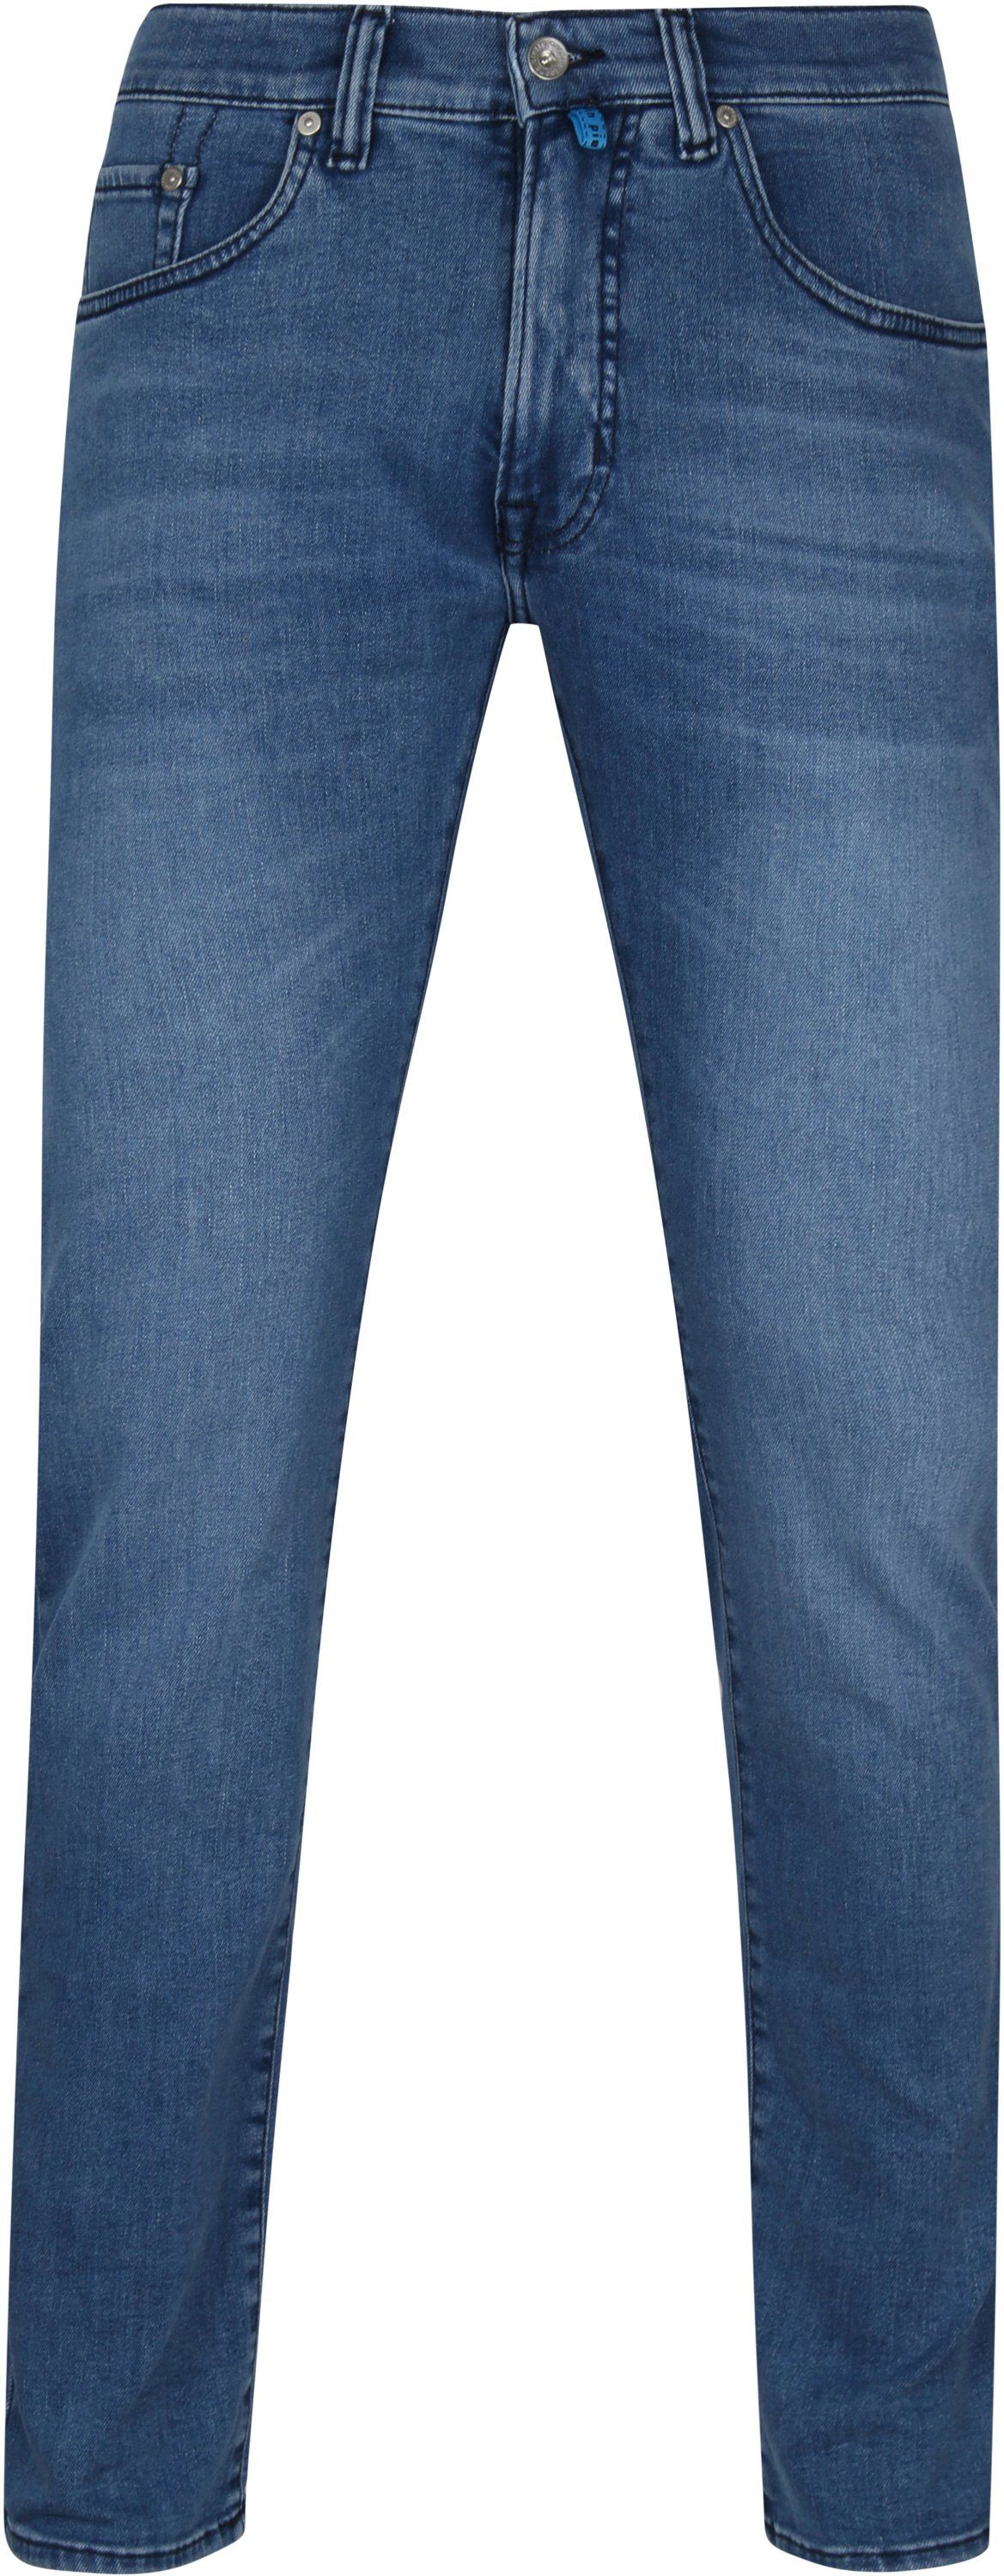 Pierre Cardin Jeans Antibes Dark Blue Dark Blue size W 31